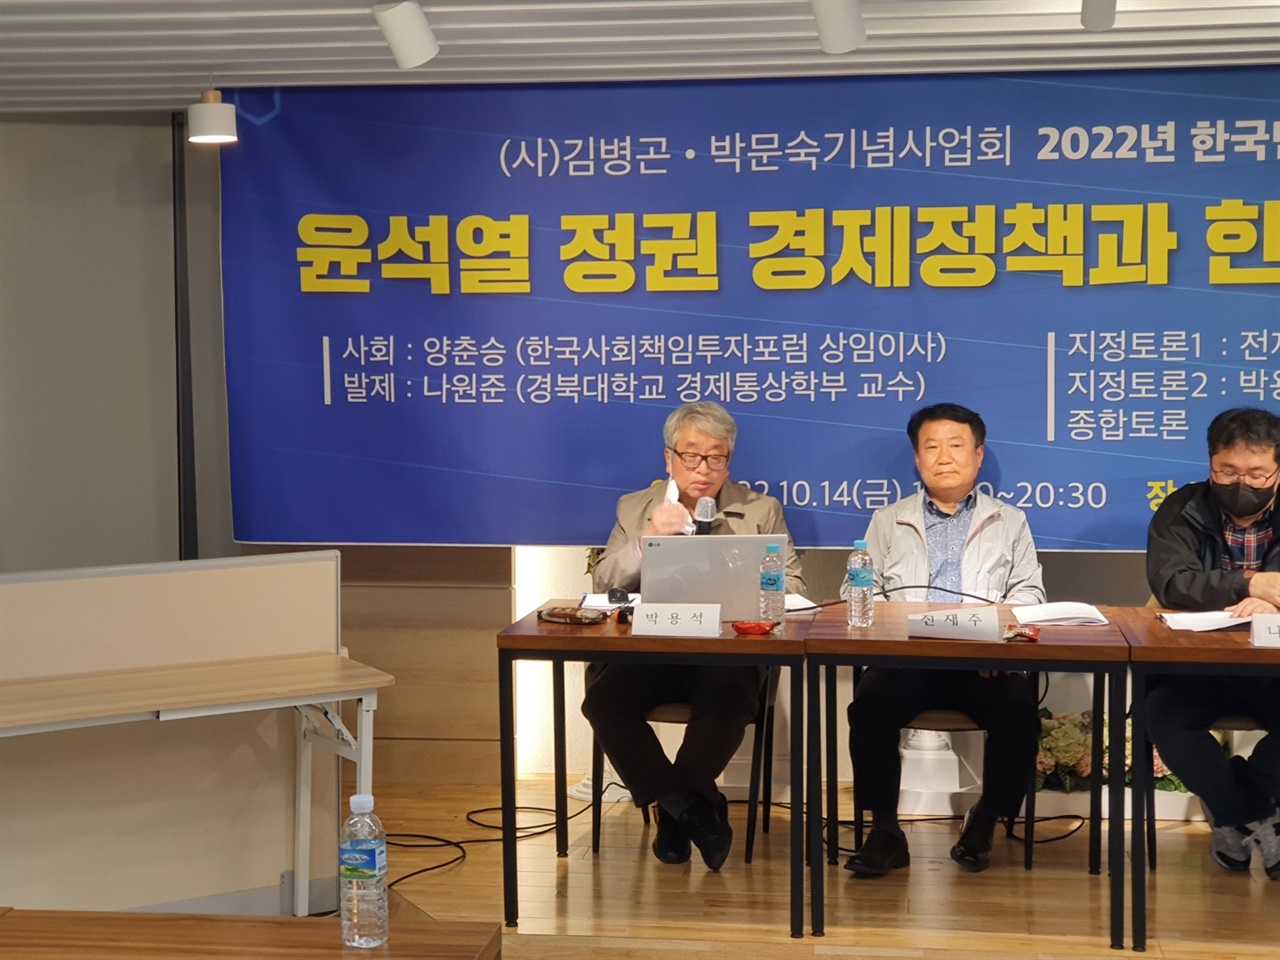 (사) 김병곤 박문숙 기념사업회가 주최한 제2차 한국민주사회포럼에서 박용석 민노총 민주노동위원장이 발표를 하고 있다.